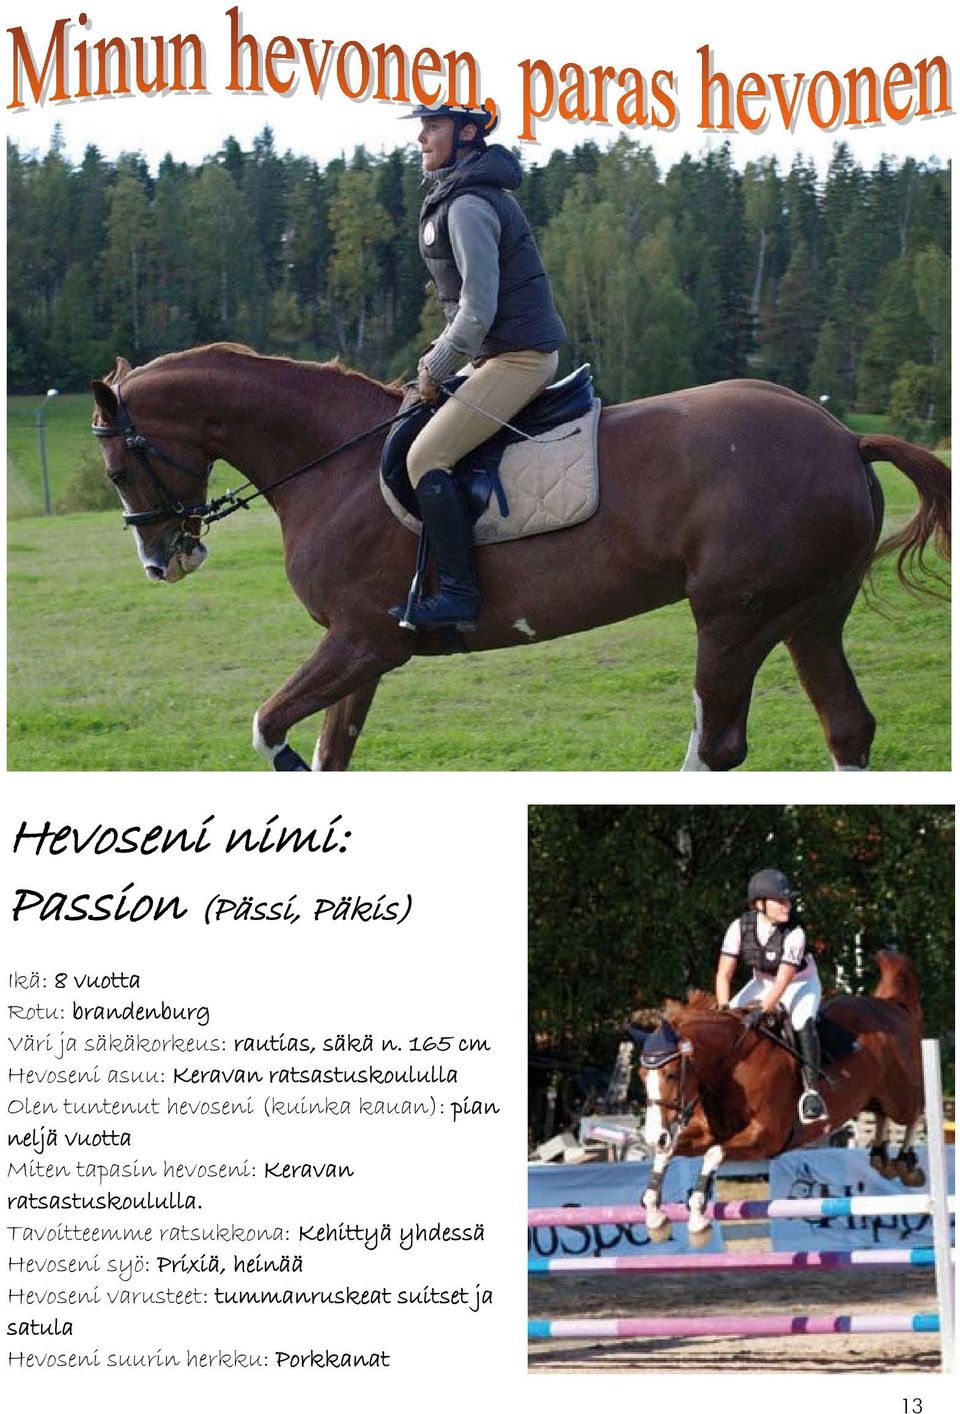 vuotta Miten tapasin hevoseni: Keravan ratsastuskoululla.